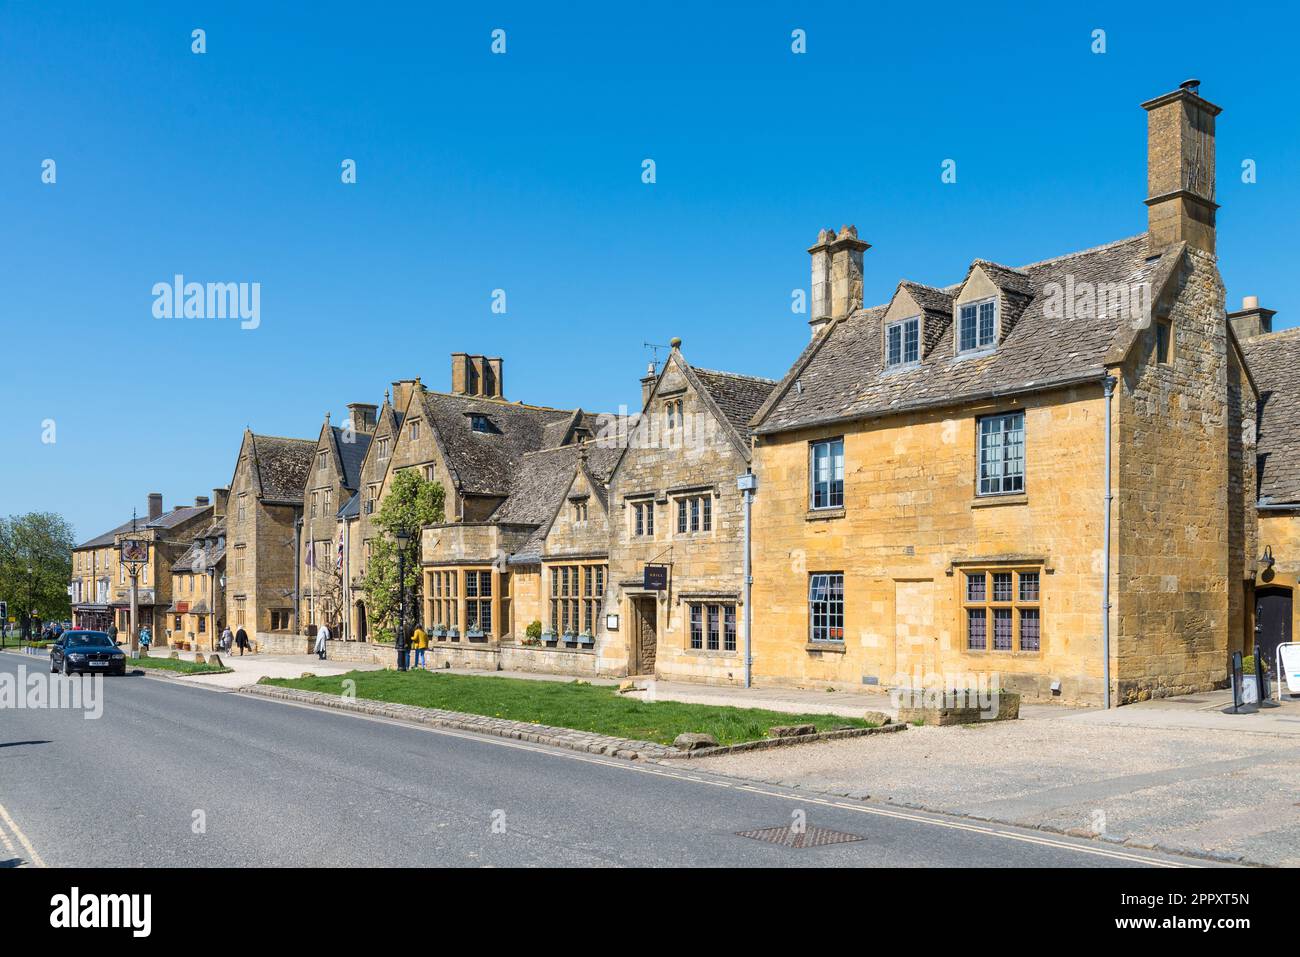 Le joli village Cotswold de Broadway dans le Worcestershire, Angleterre, Royaume-Uni Banque D'Images